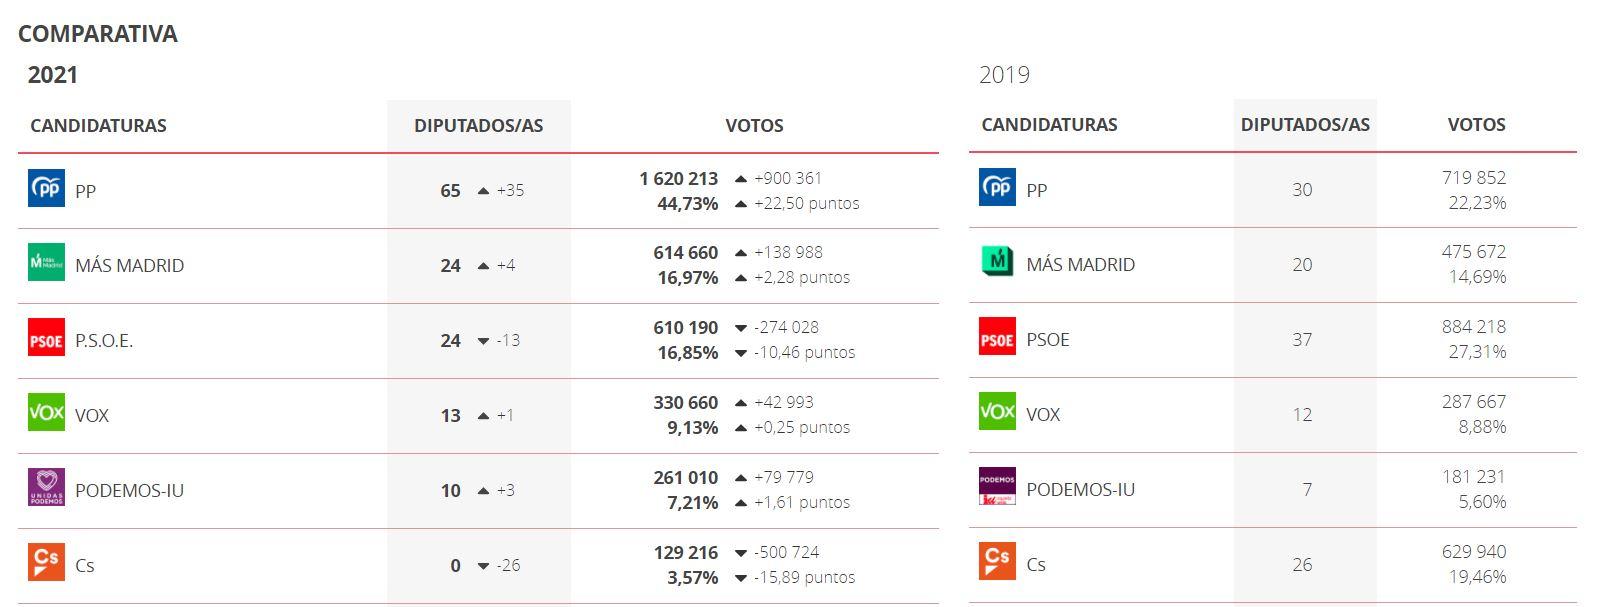 Resultados electorales de la Comunidad de Madrid el 4 de mayo